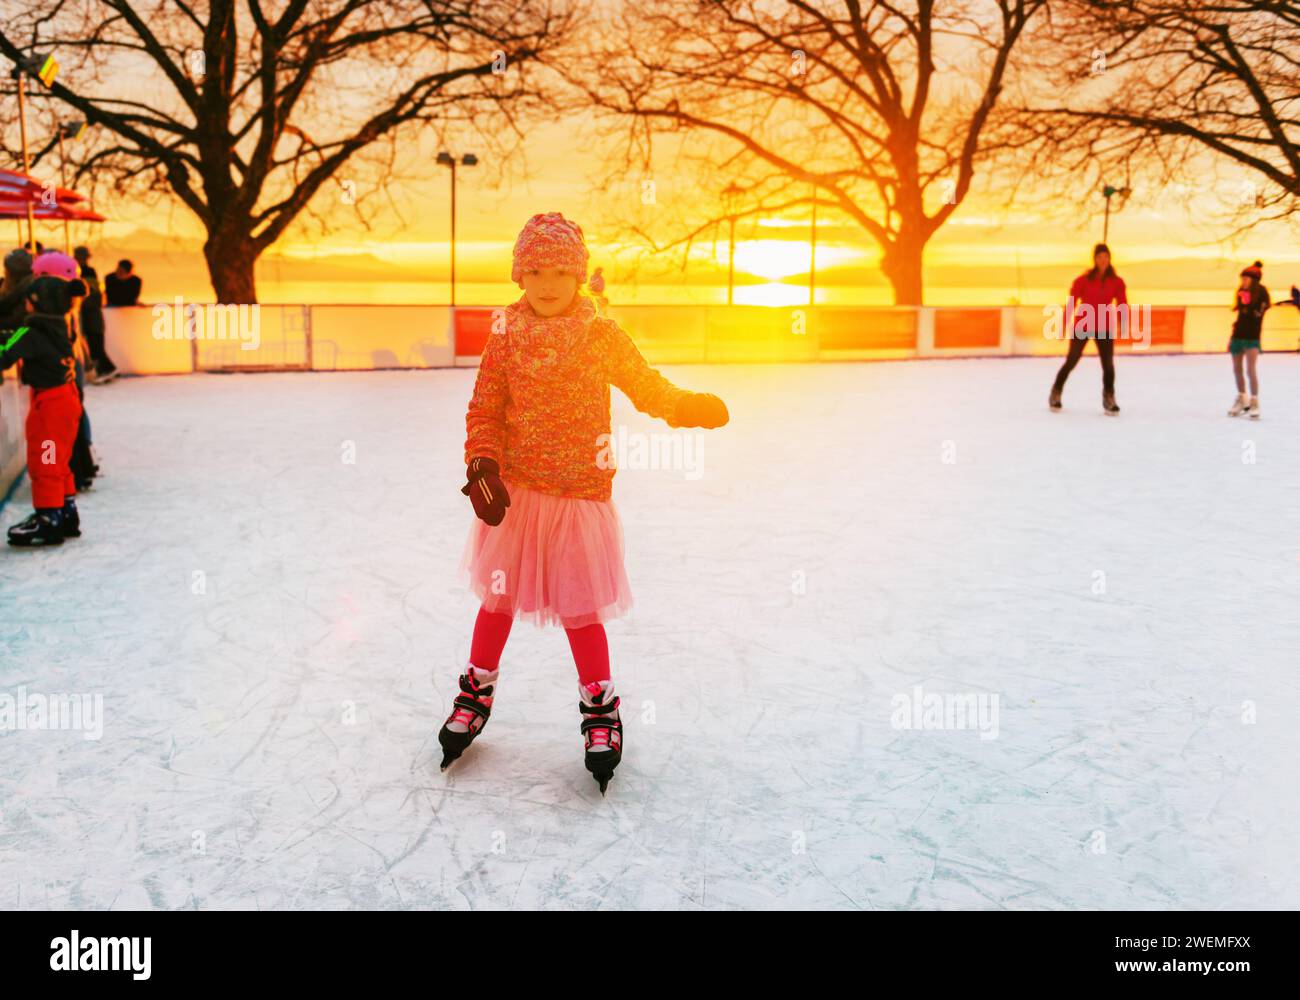 Süßes kleines Mädchen auf der Eislaufbahn in rosa Kleidung Stockfoto